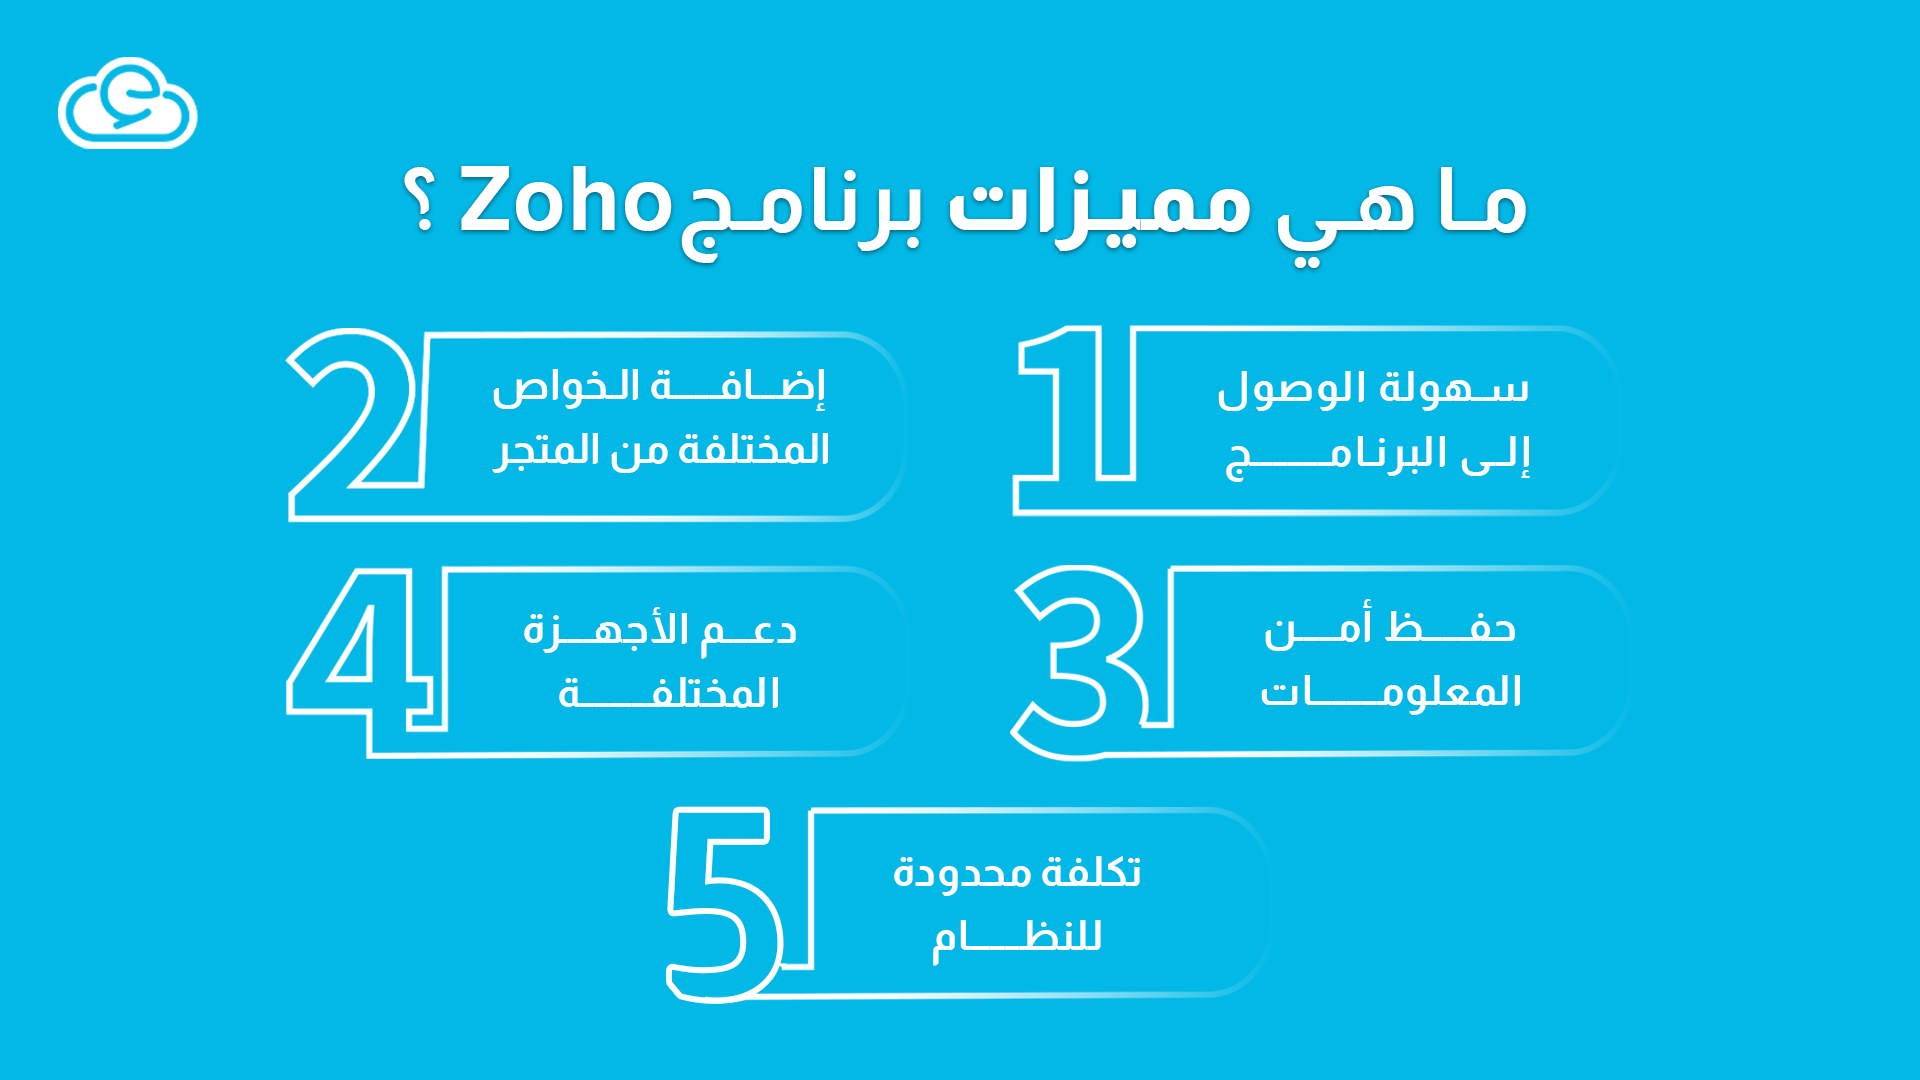 مميزات برنامج Zoho المحاسبي